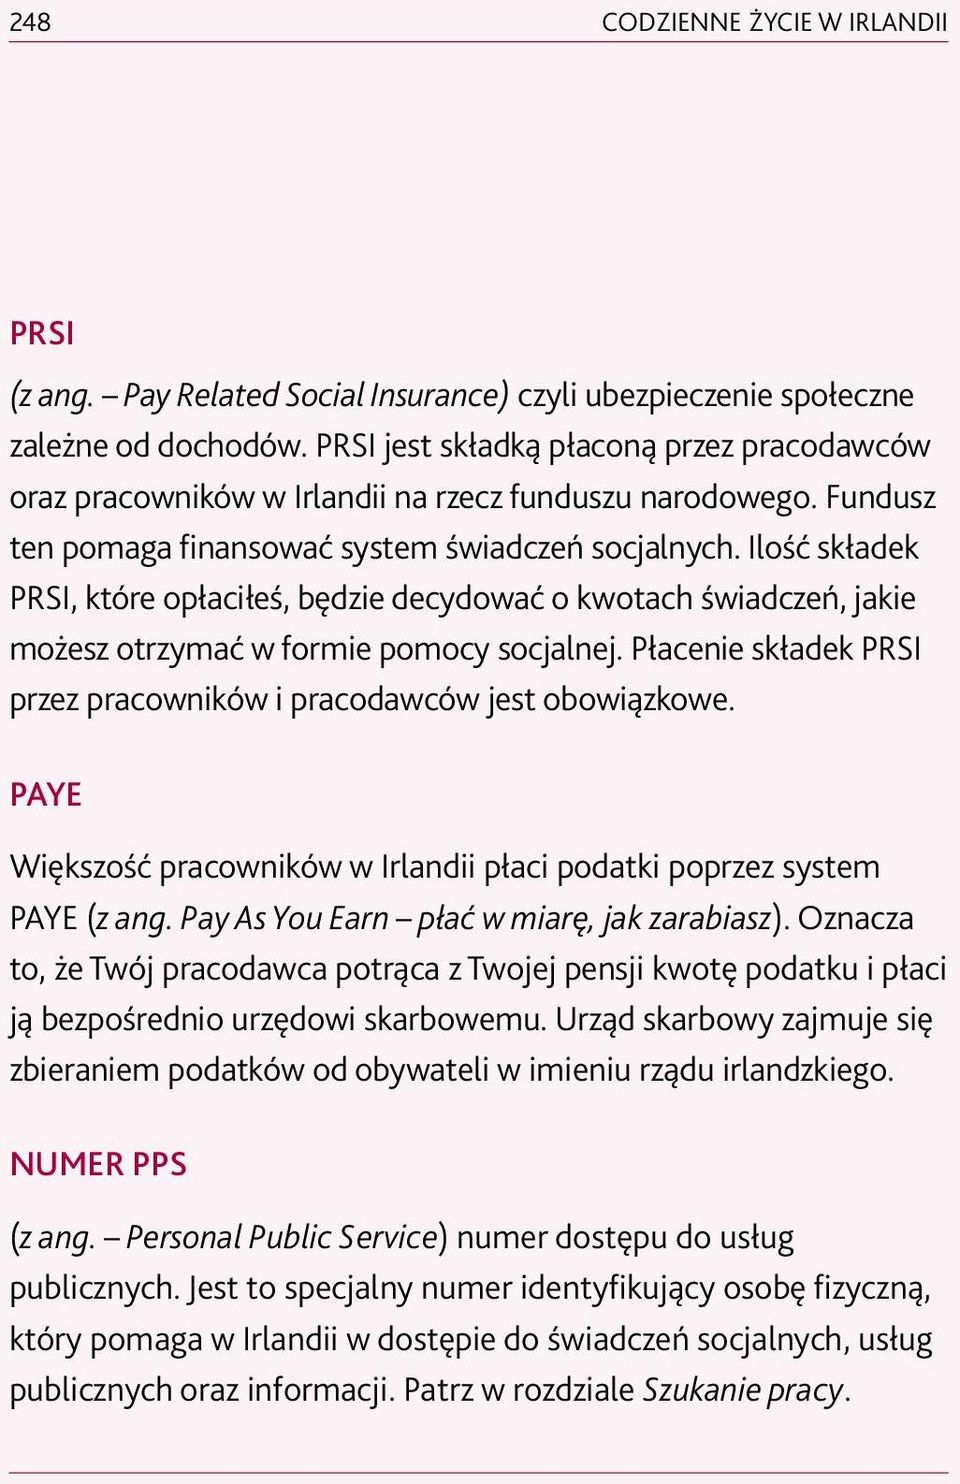 Ilość składek PRSI, które opłaciłeś, będzie decydować o kwotach świadczeń, jakie możesz otrzymać w formie pomocy socjalnej. Płacenie składek PRSI przez pracowników i pracodawców jest obowiązkowe.